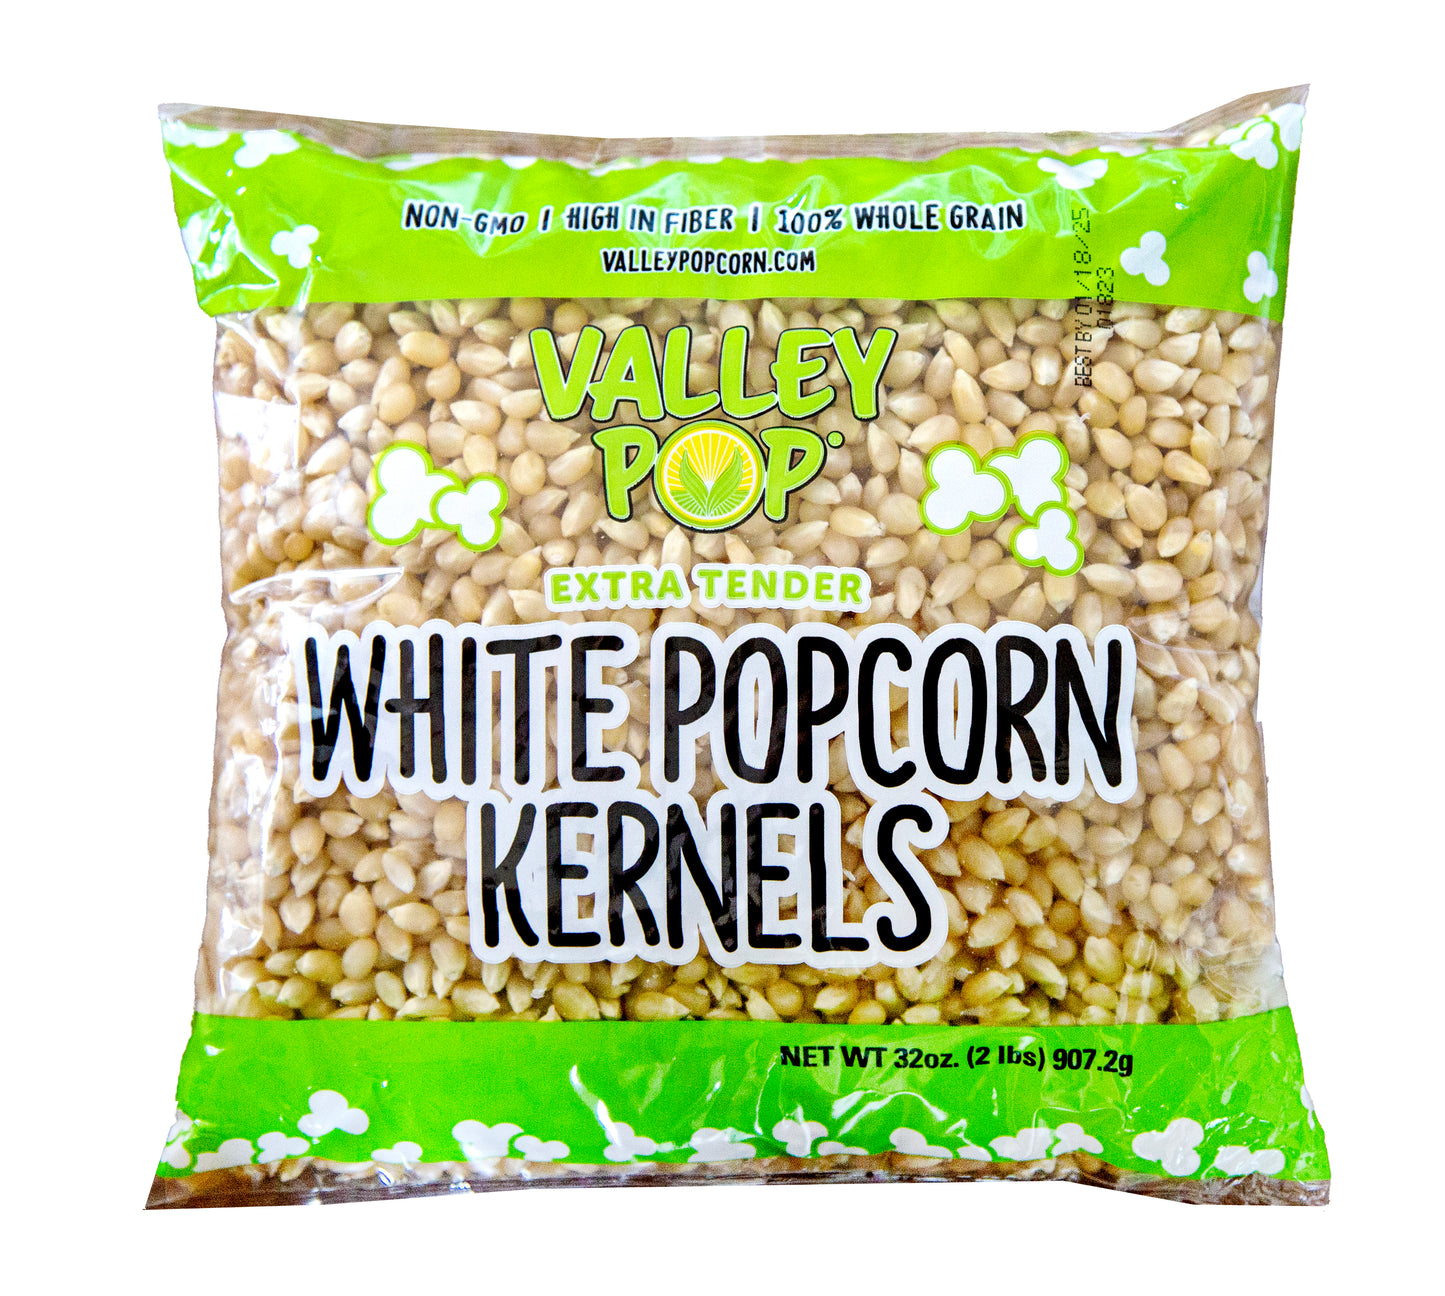 12 Count - 2 lb Bag Non-GMO White Popcorn Kernels